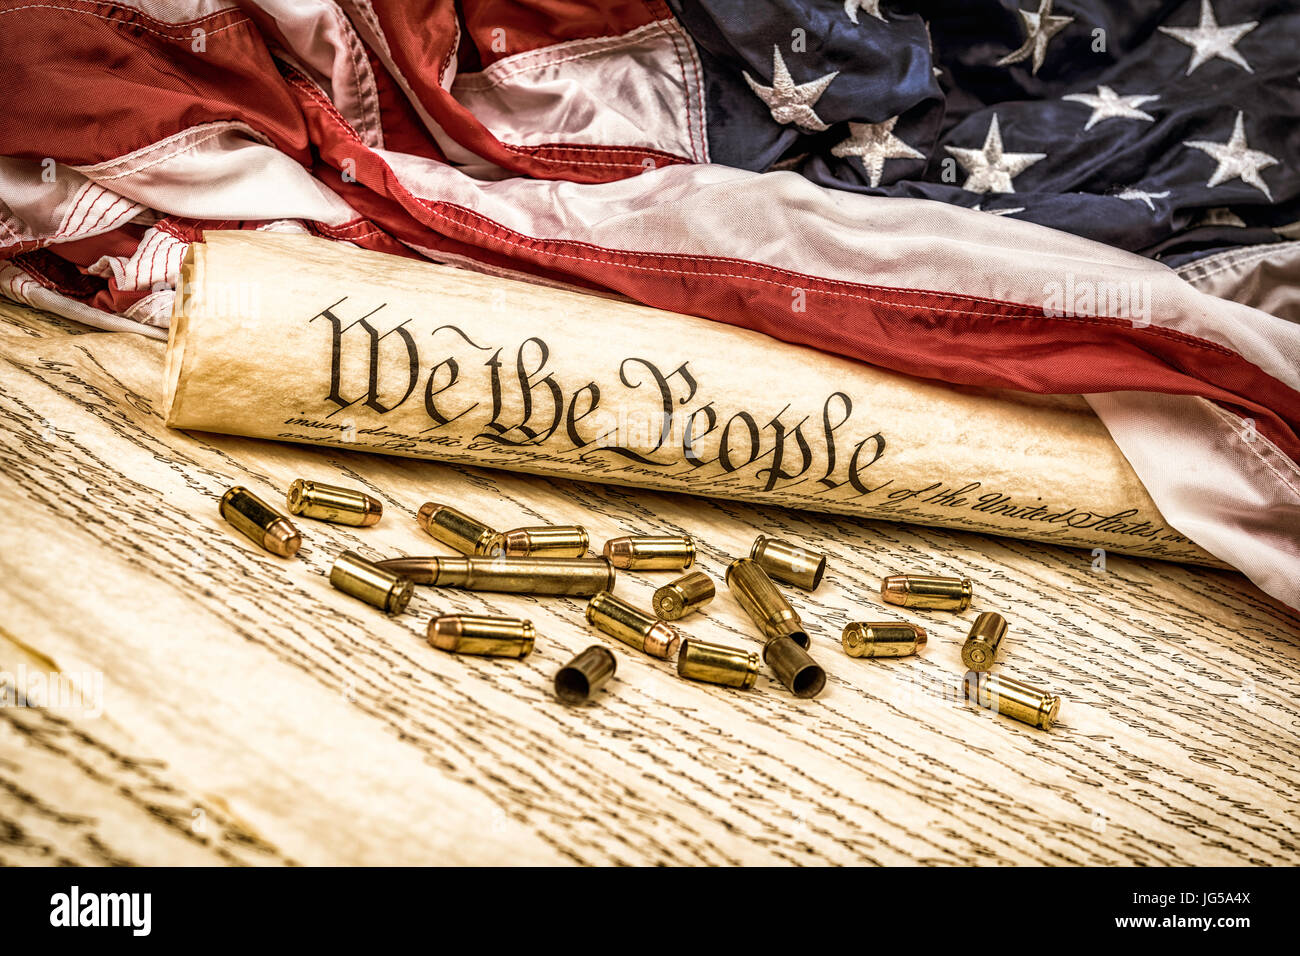 La costituzione degli Stati Uniti arrotolata su una bandiera americana con proiettili sparsi che simboleggiano il secondo emendamento. Foto Stock